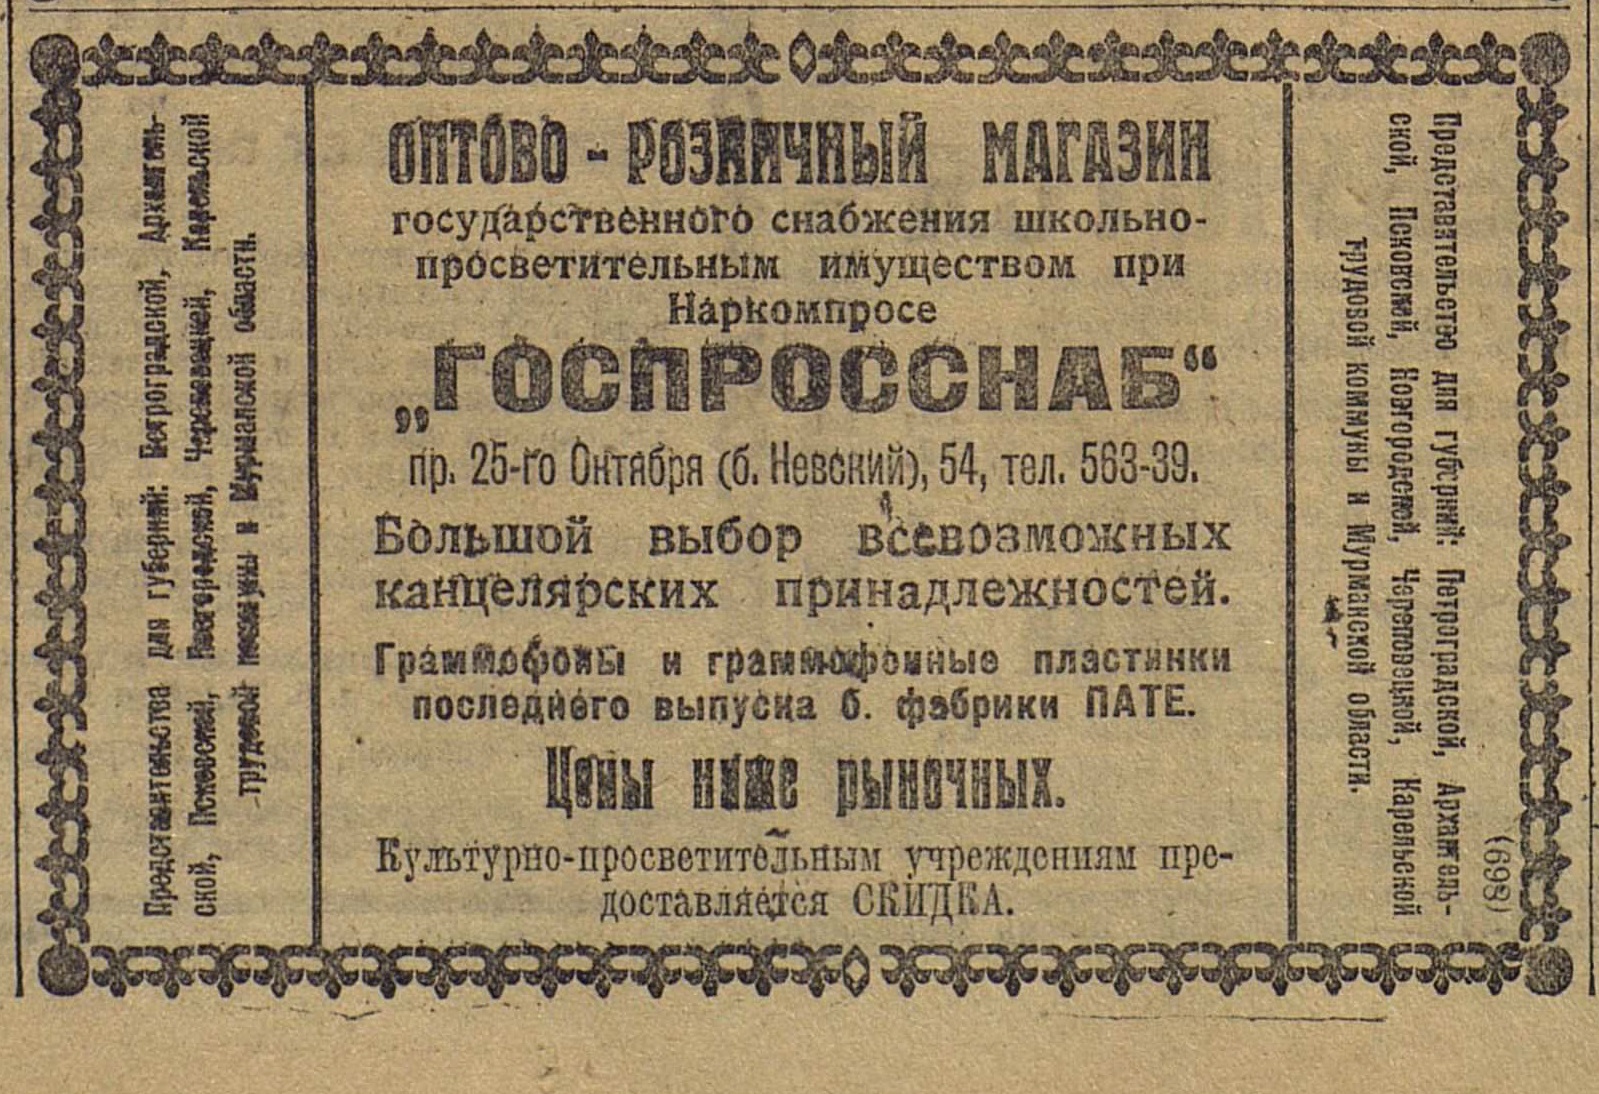 Реклама Оптово-розничного магазина Госпросснаба